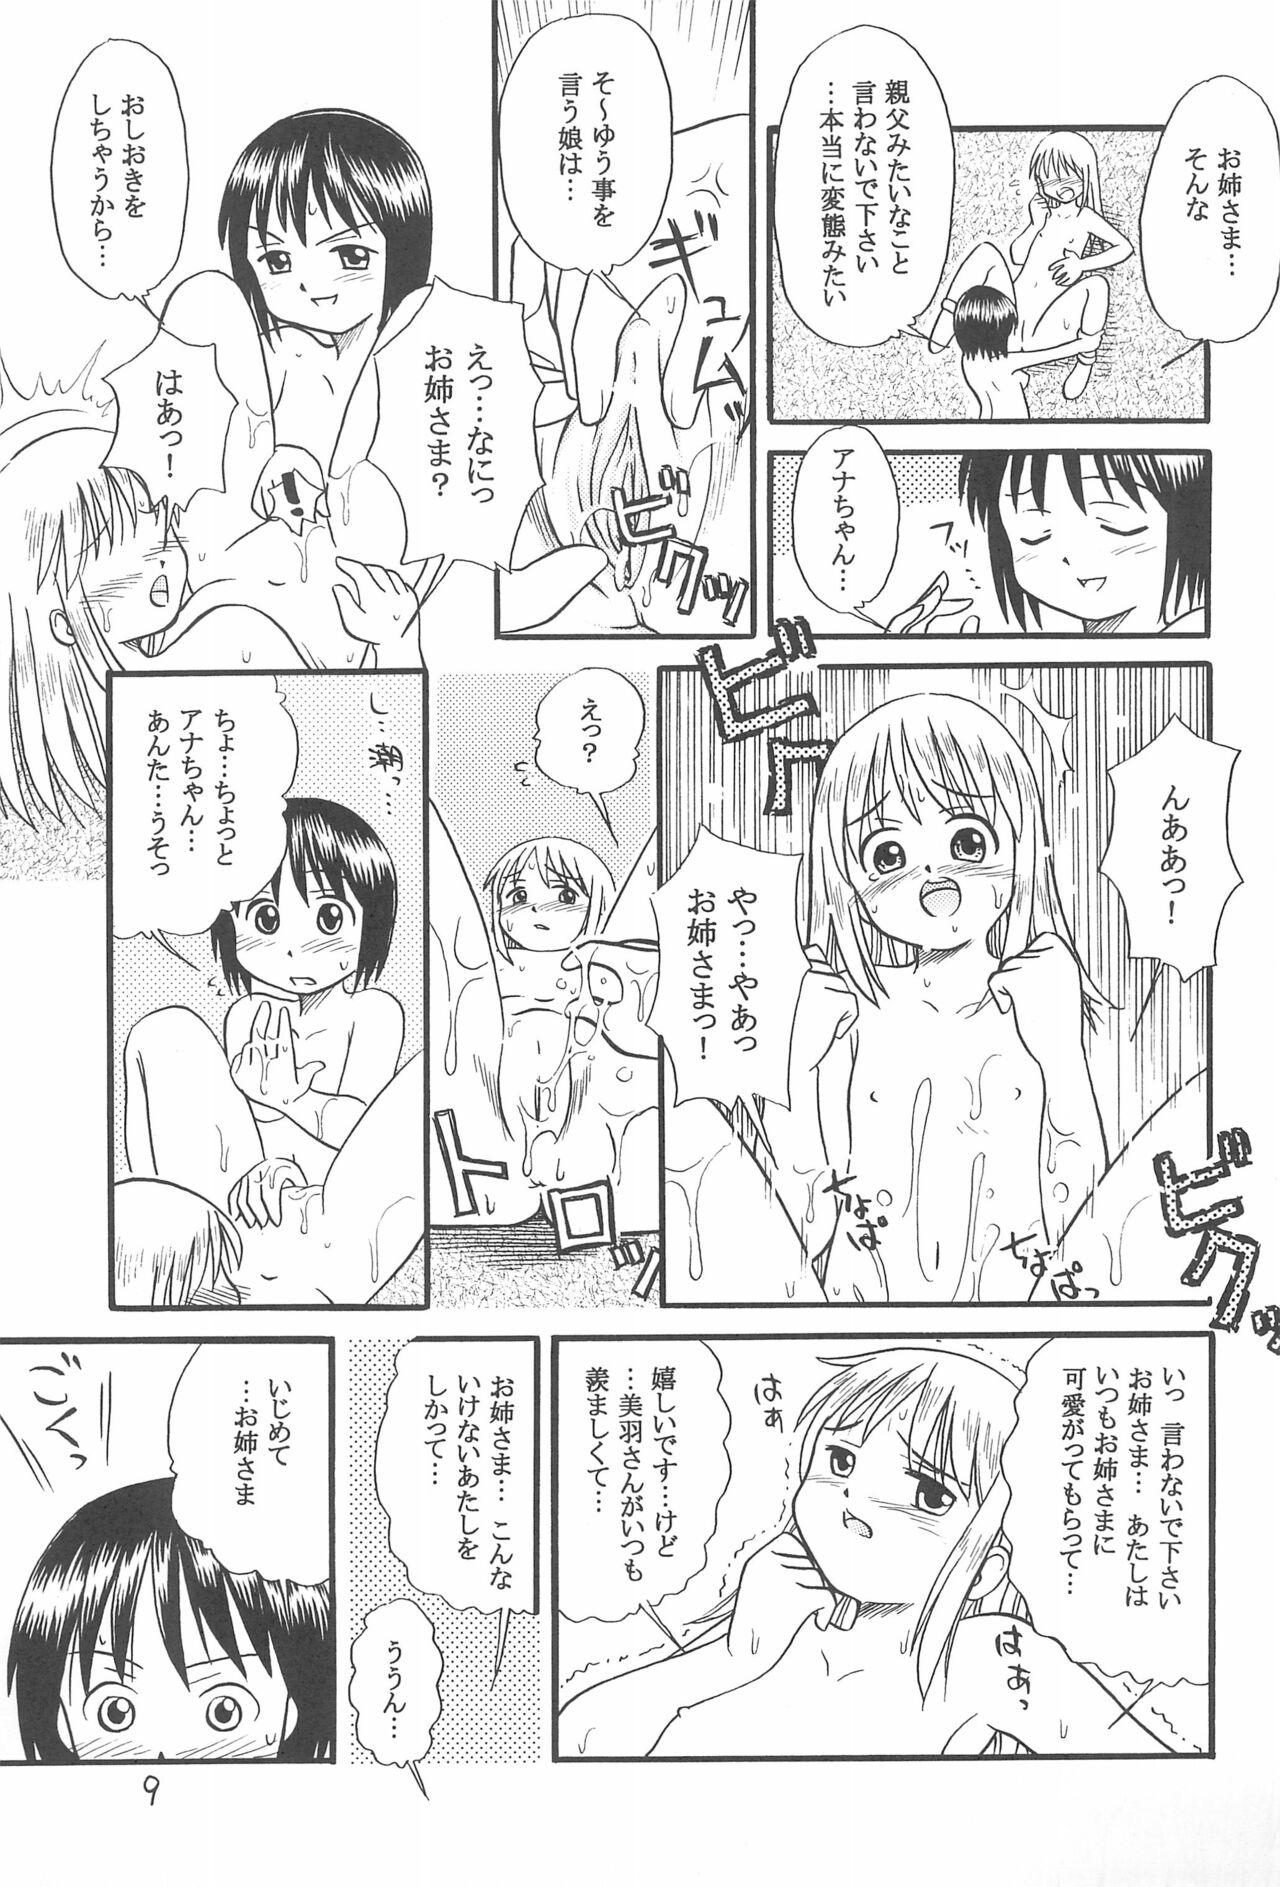 Putas Ichigo Renniu - Ichigo mashimaro Blow Job - Page 11